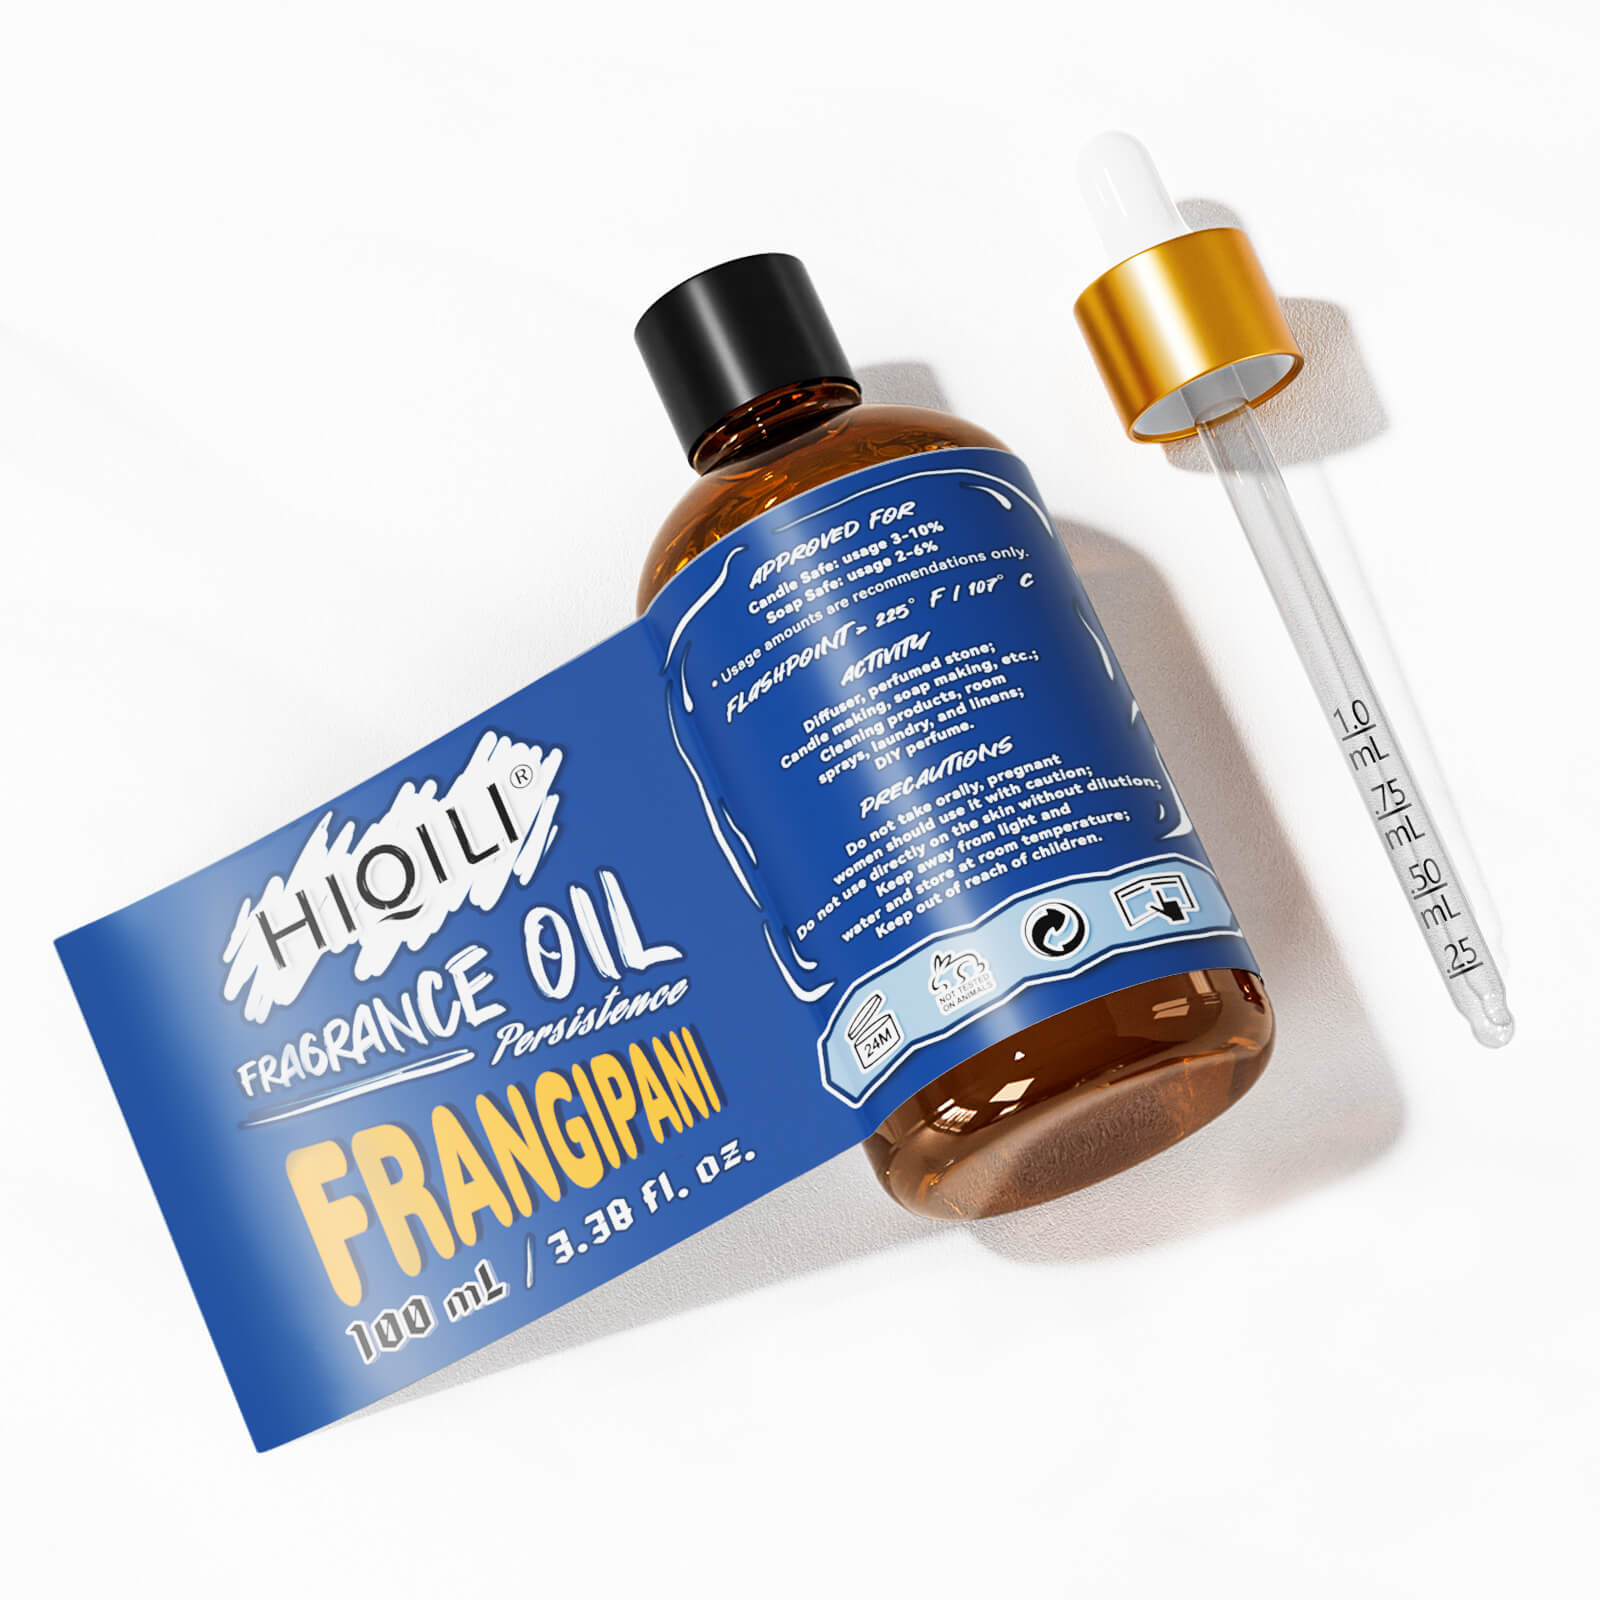 Feangipani Fragrance Oil